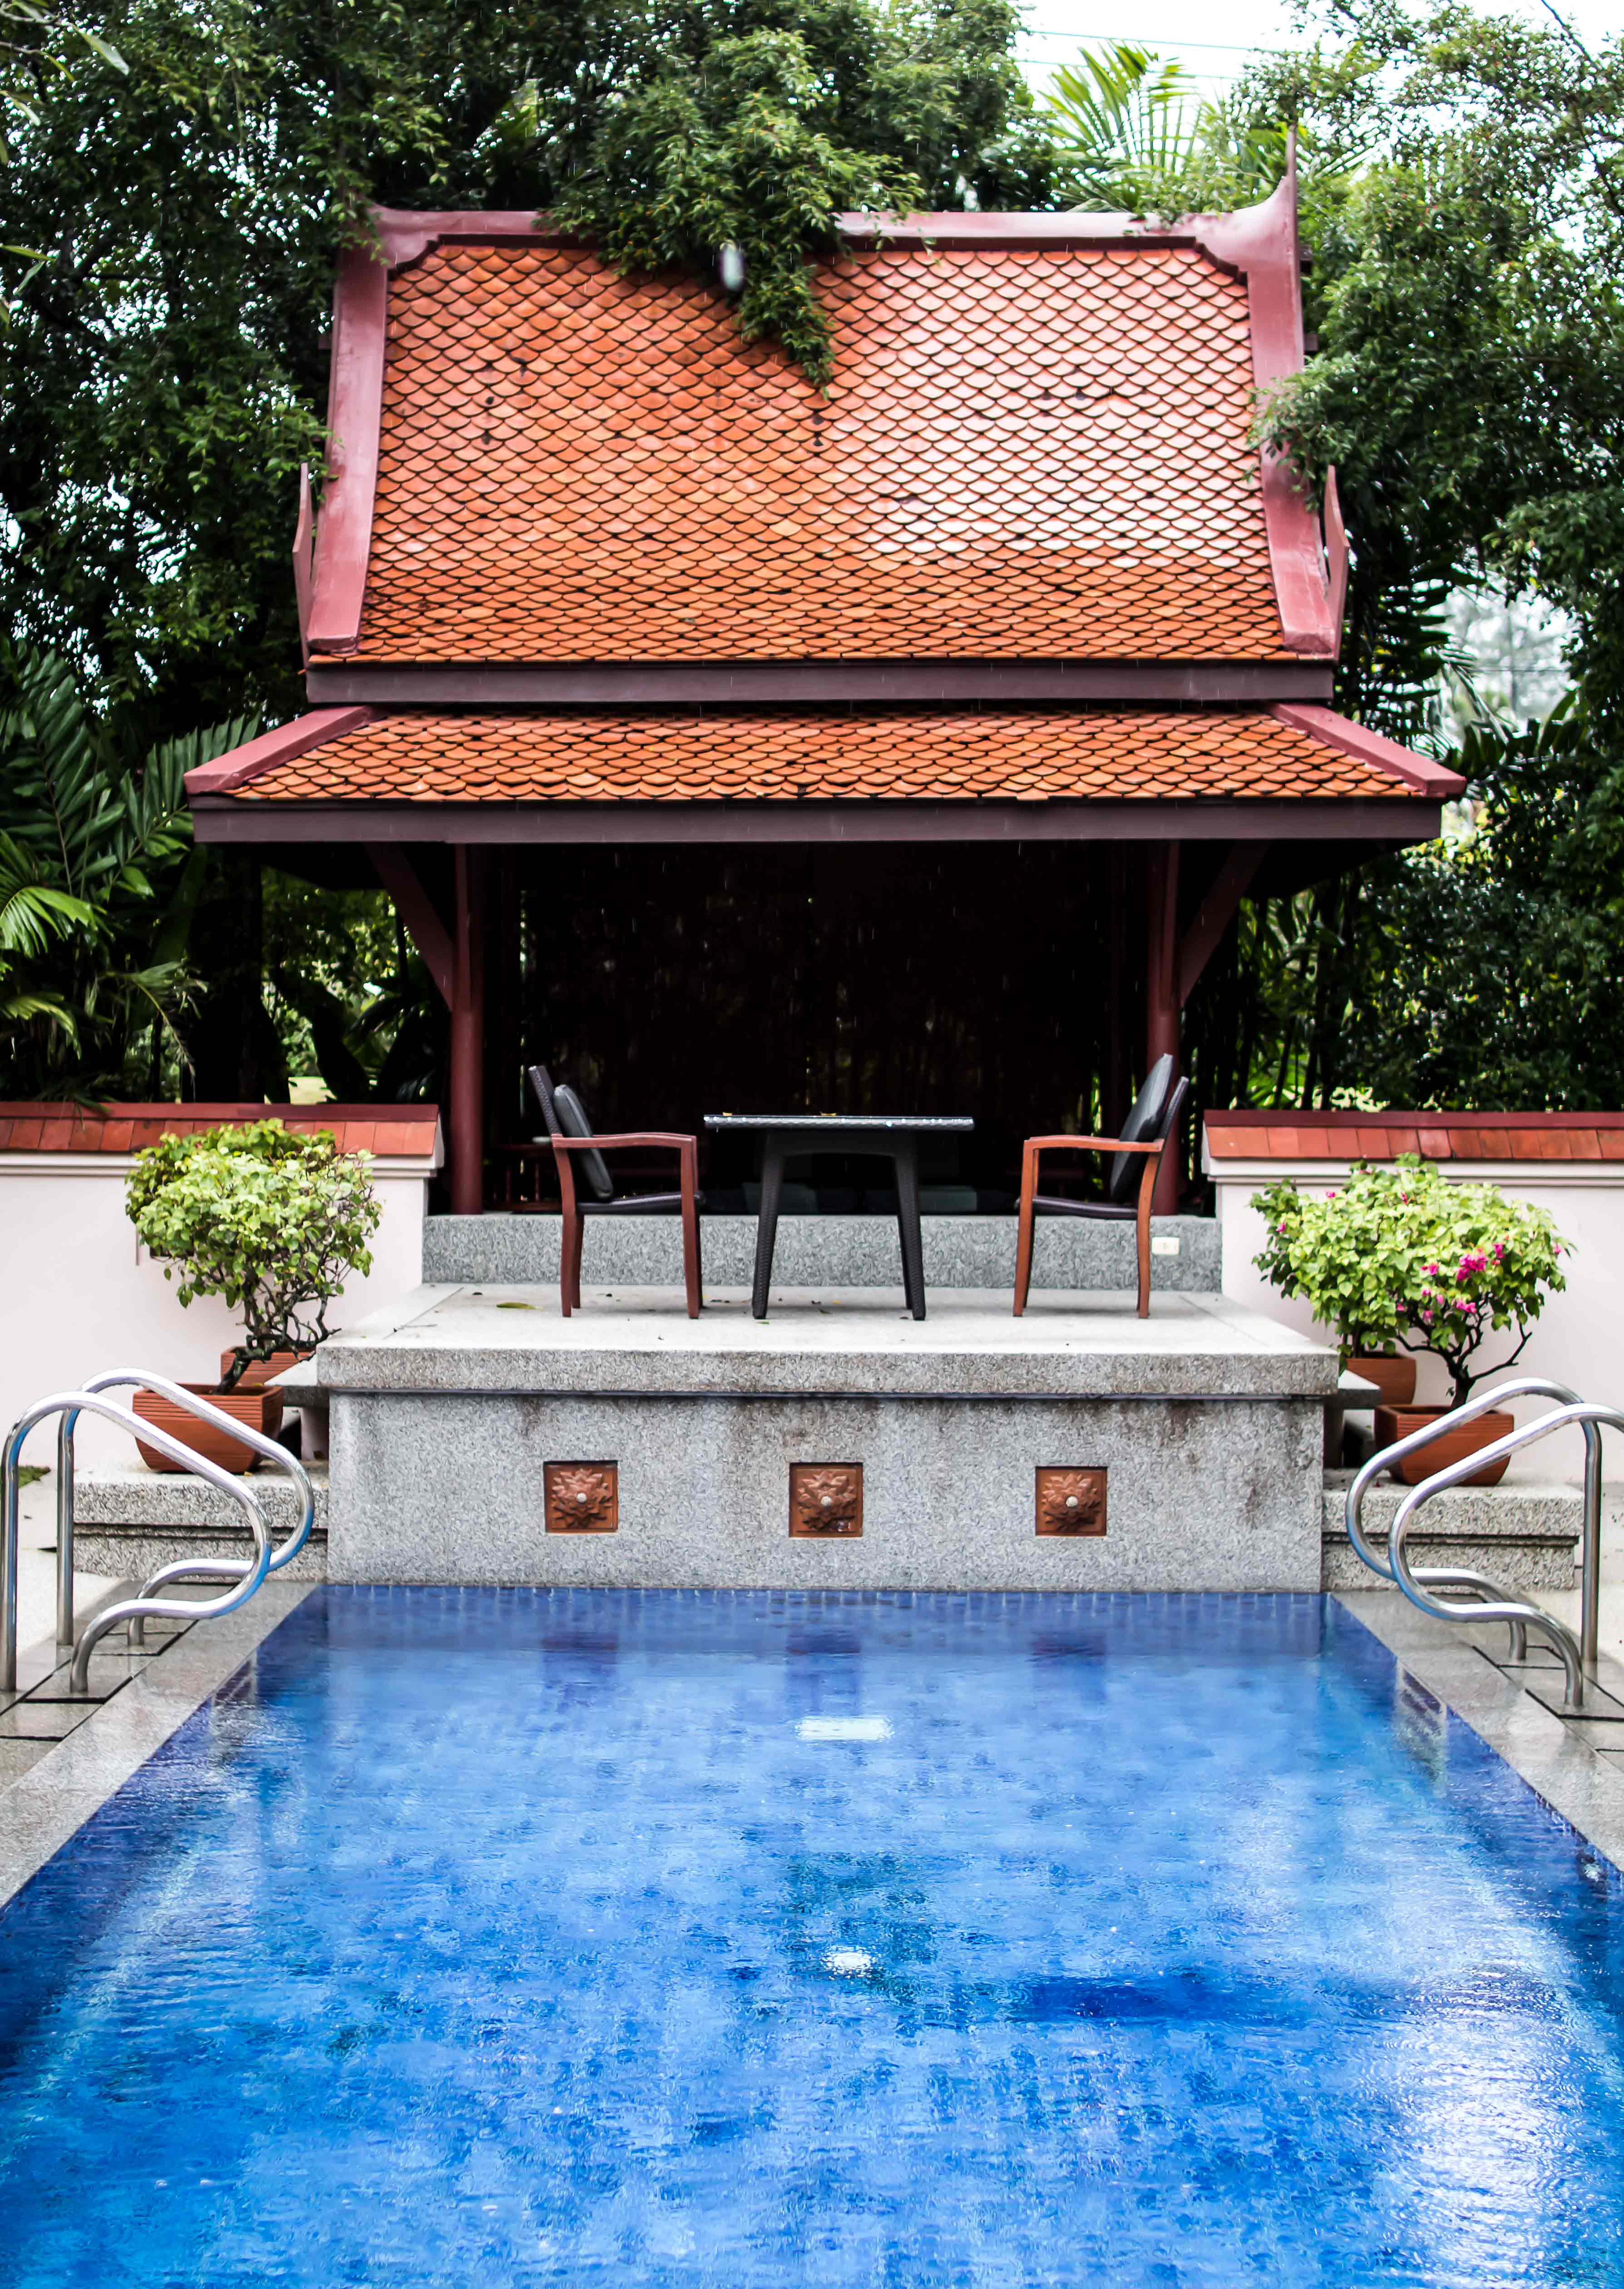 phuket Reisebericht Banyan Tree Resort Thailand für Anfänger